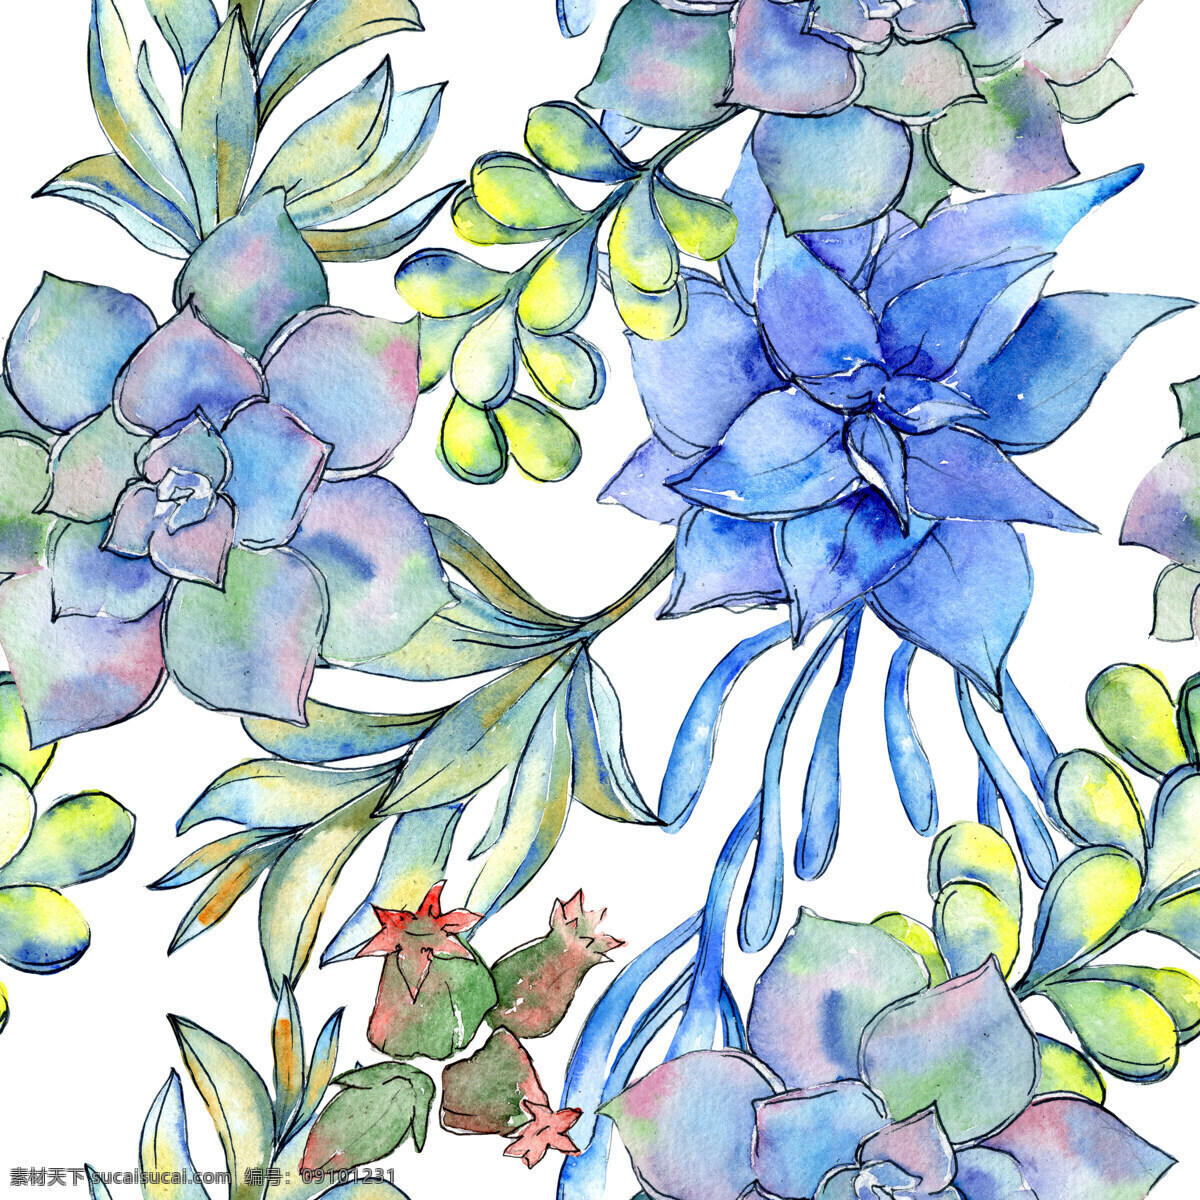 手绘 各种 品种多 肉 植物 背景 背景素材 卡通 蓝色 绿色 水彩 叶子